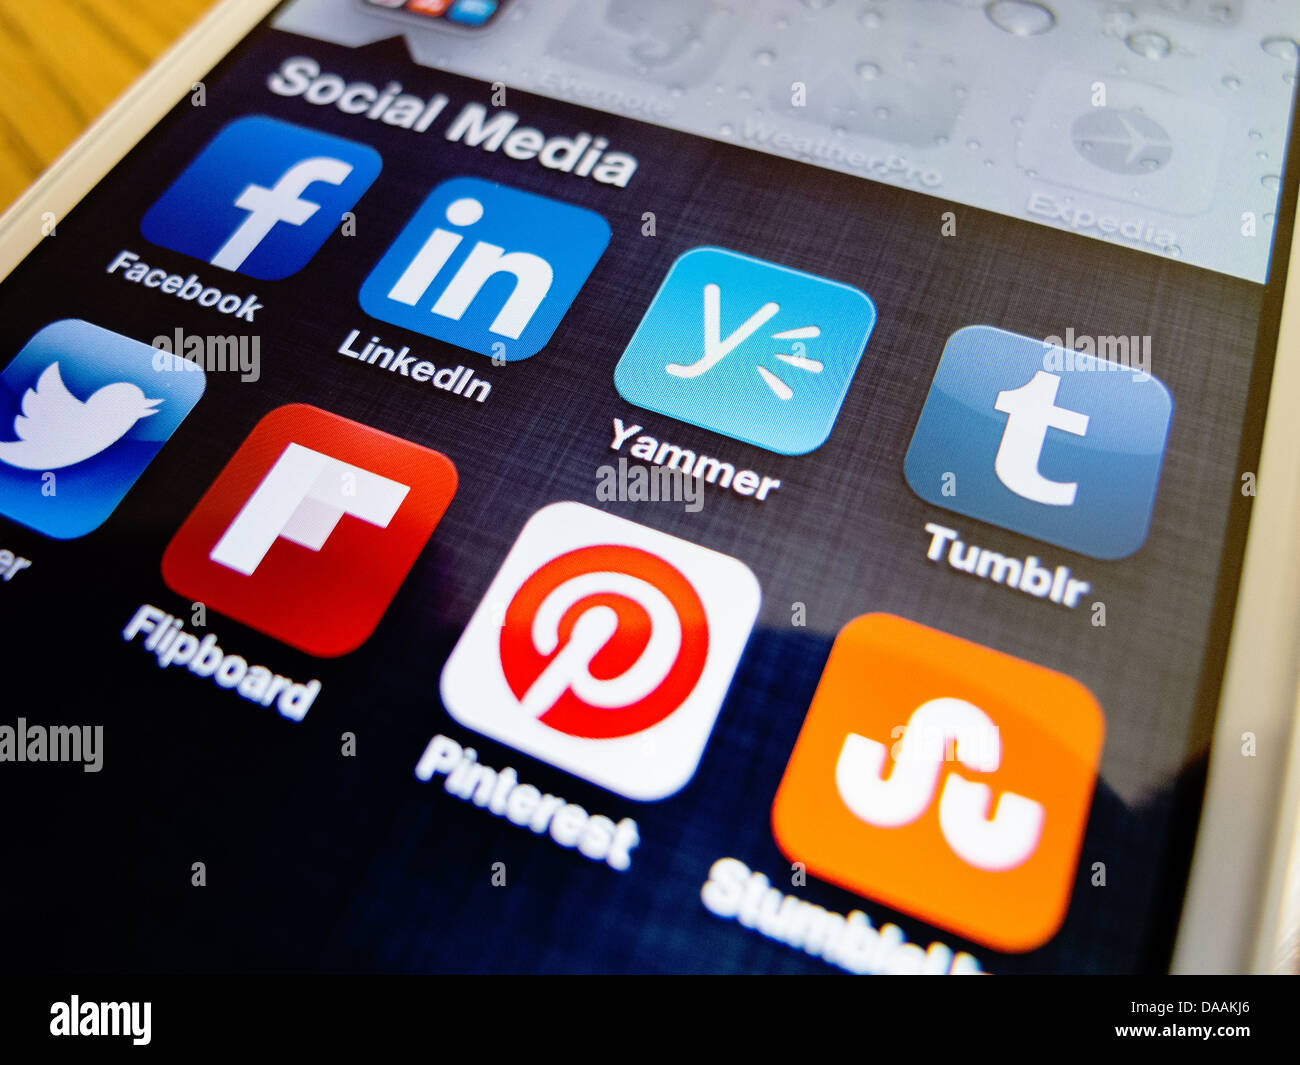 Detalle de la pantalla del teléfono inteligente iPhone mostrando iconos de aplicaciones de medios sociales Foto de stock